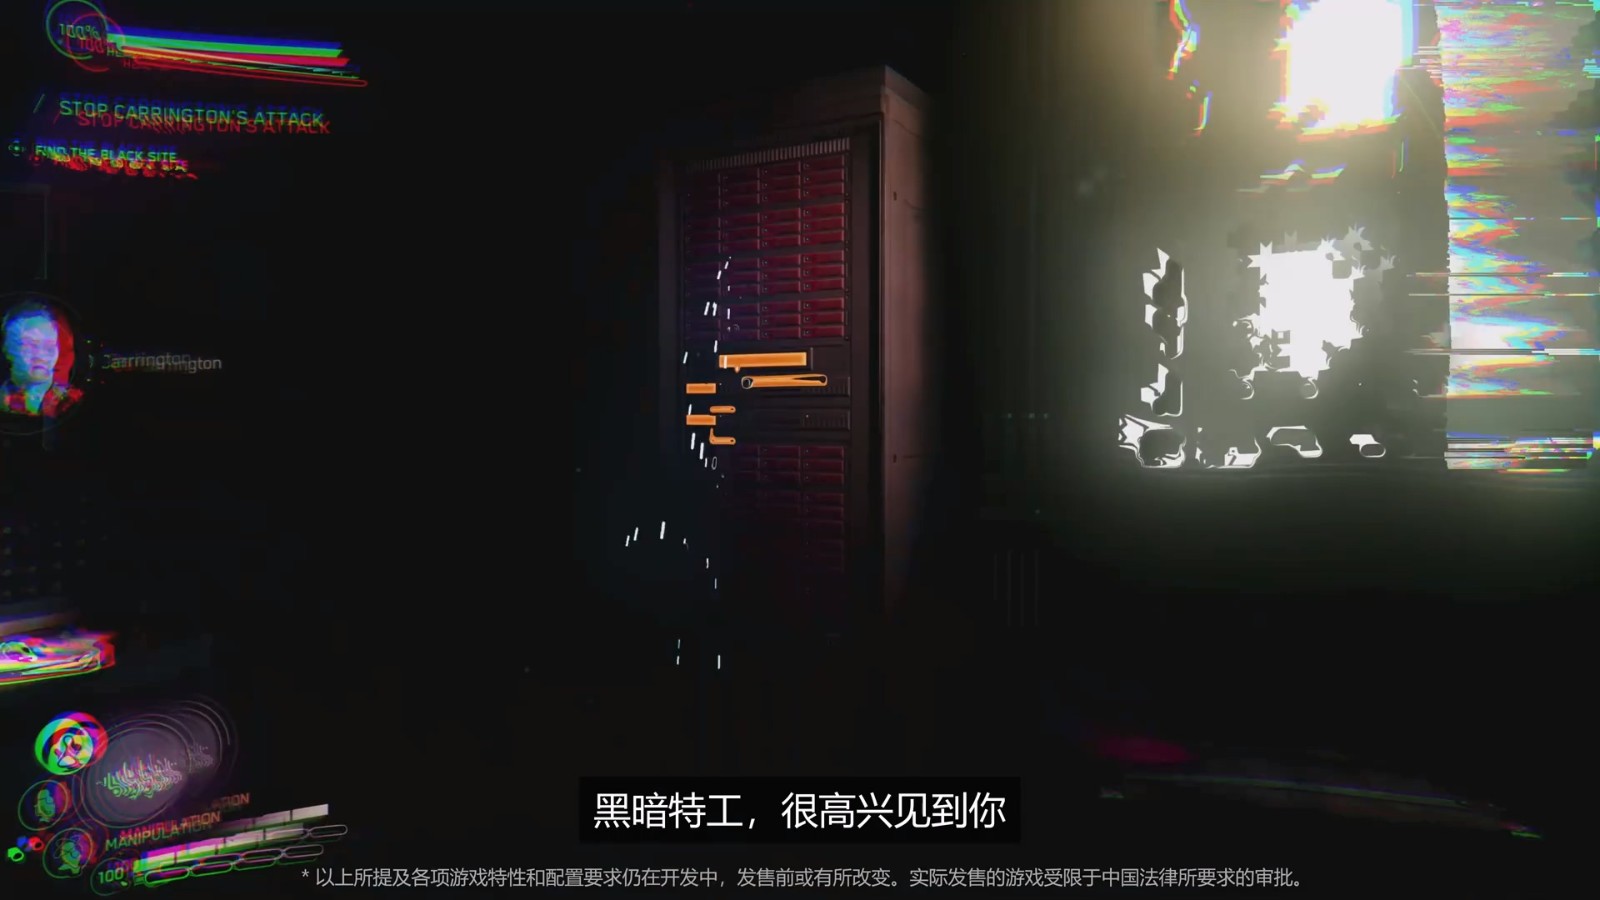 《完美黑暗》中文版實機宣傳片 新舊版女主對比